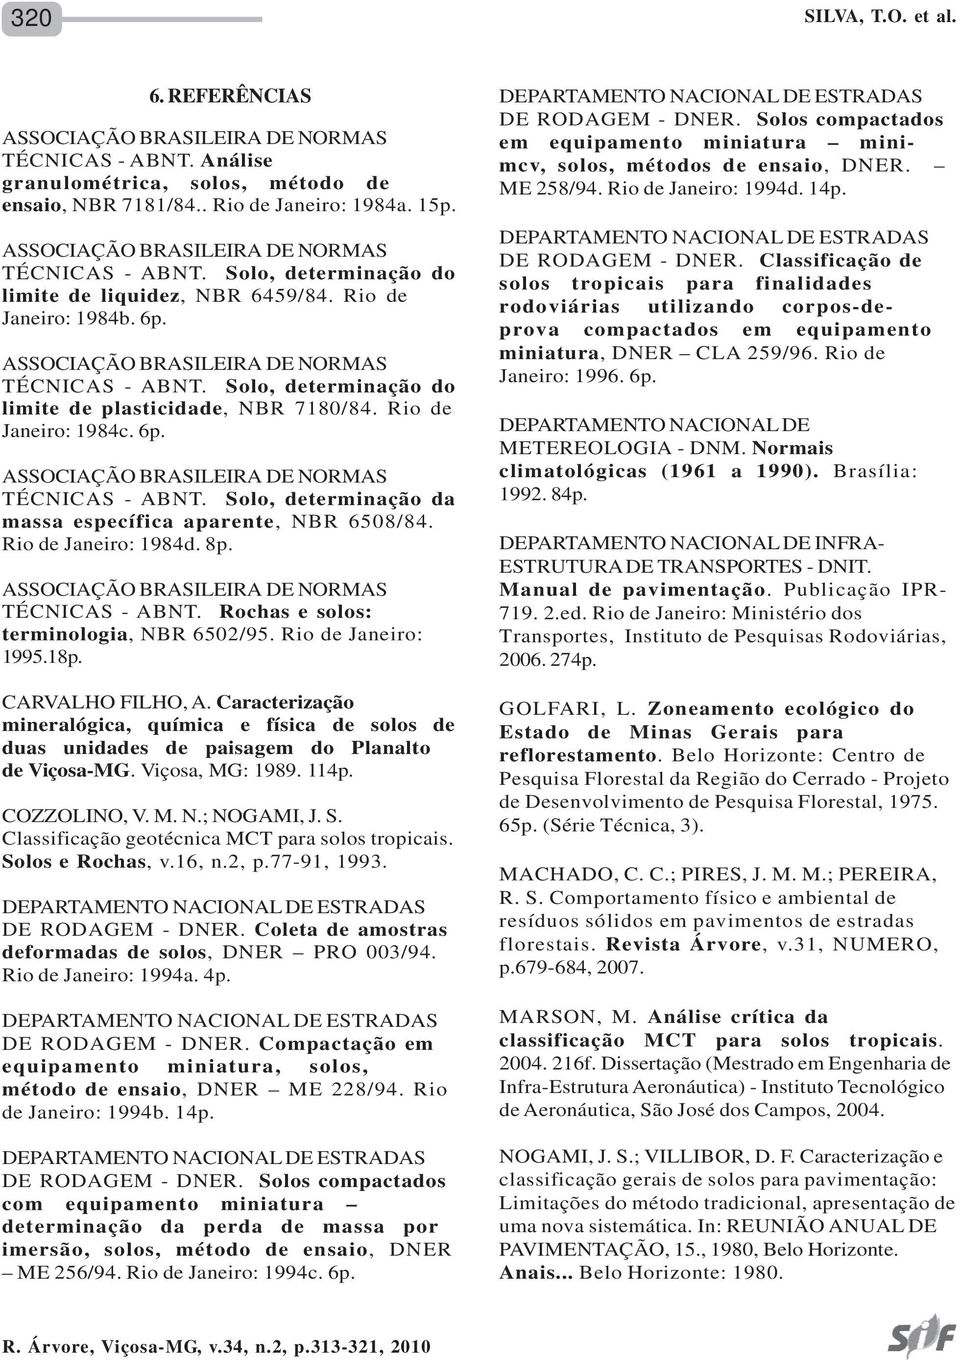 Rio de Janeiro: 1984d. 8p. TÉCNICAS - ABNT. Rochas e solos: terminologia, NBR 6502/95. Rio de Janeiro: 1995.18p. CARVALHO FILHO, A.